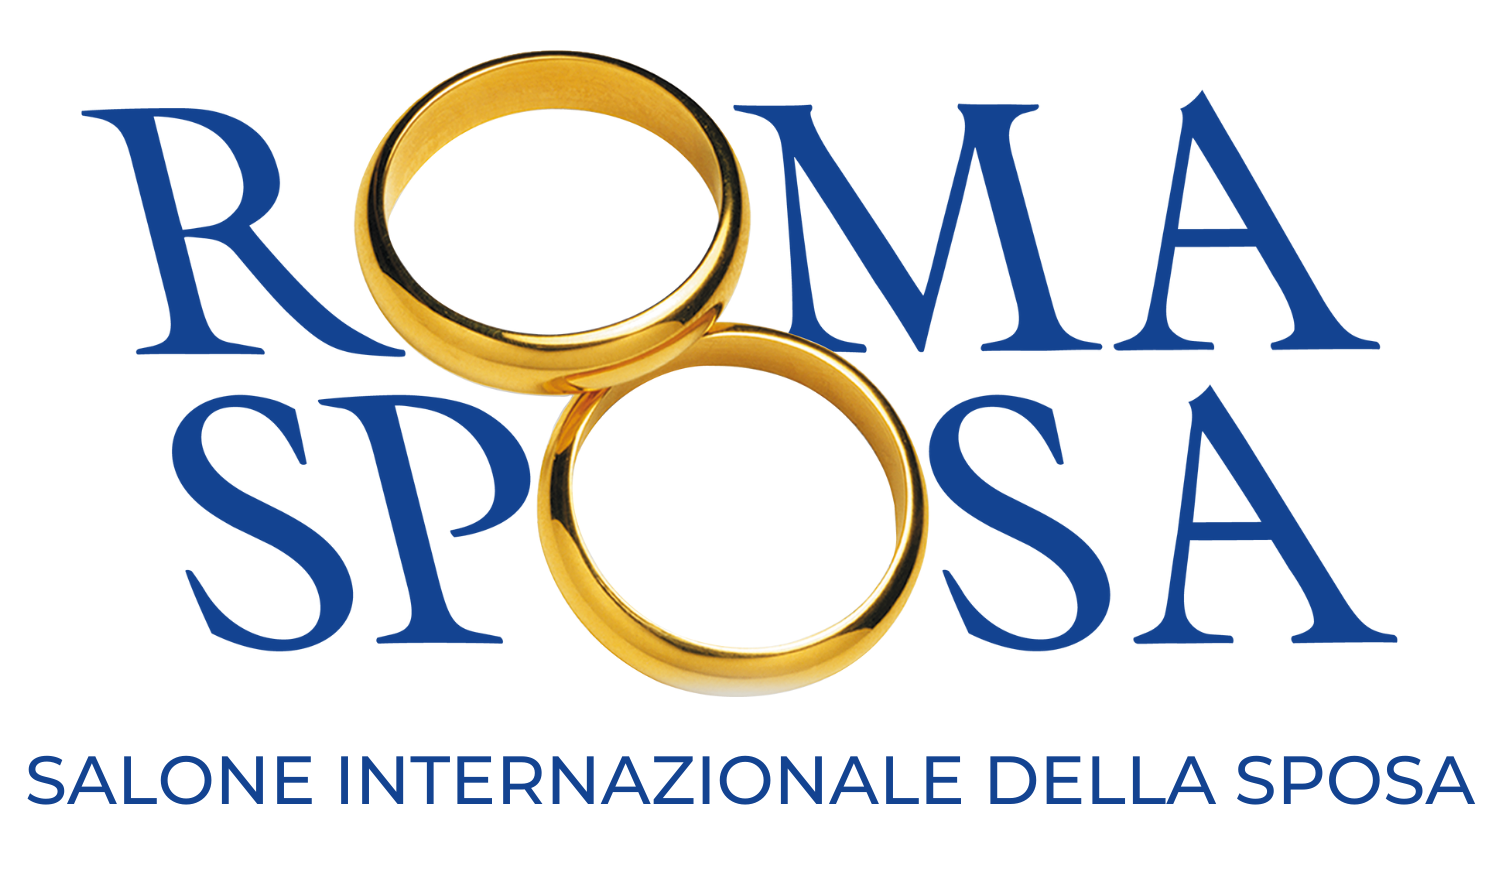 意大利罗马国际婚纱展览会logo